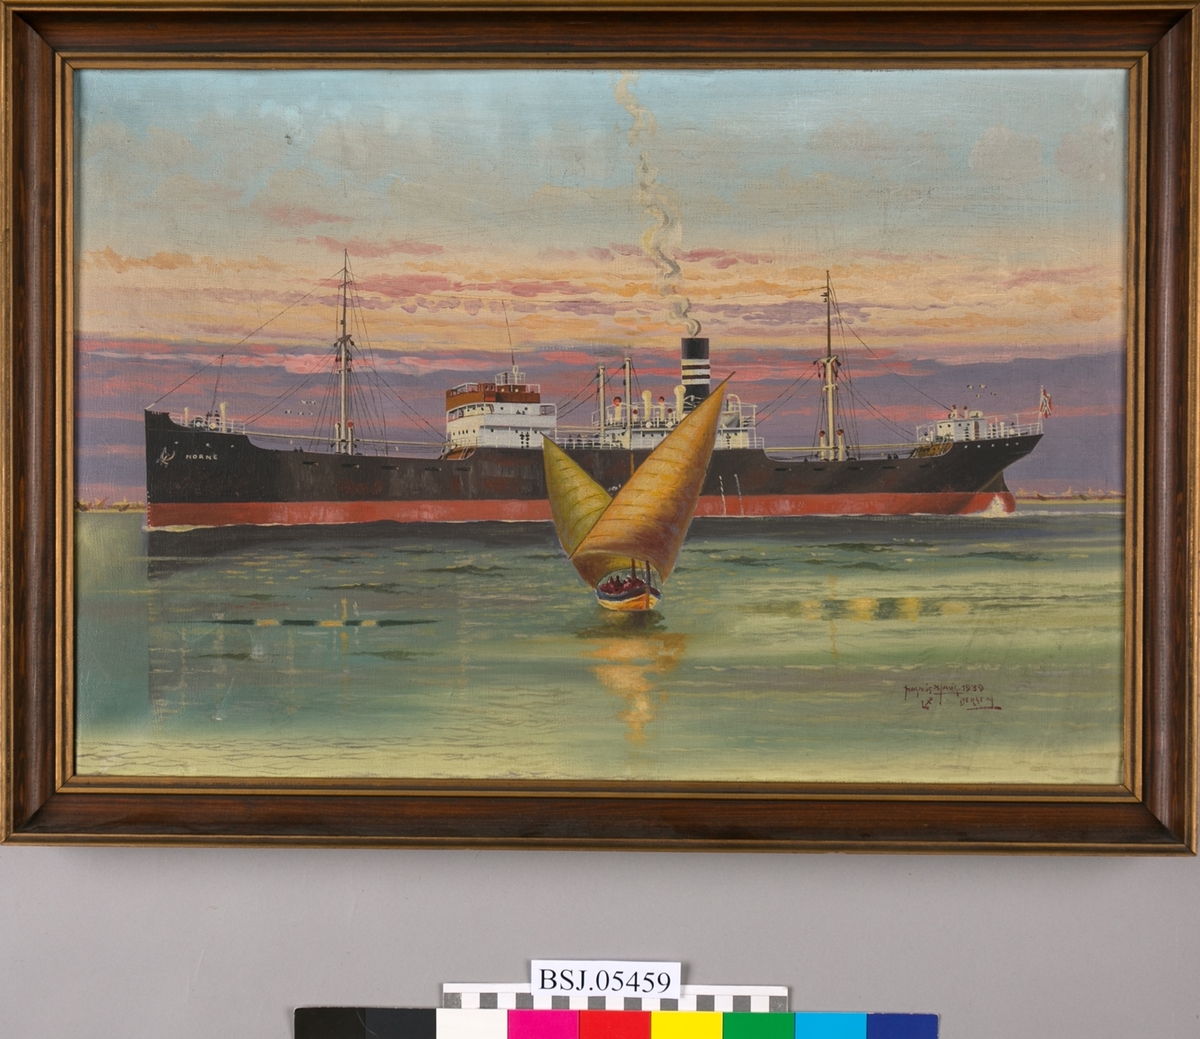 Skipsportrett av MS NORNE med havnemotiv i horisonten. I forgrunn en seilbåt med to seil. Skipet har Kuhnlerederiets skorsteinsmerke og norsk flagg i akter.